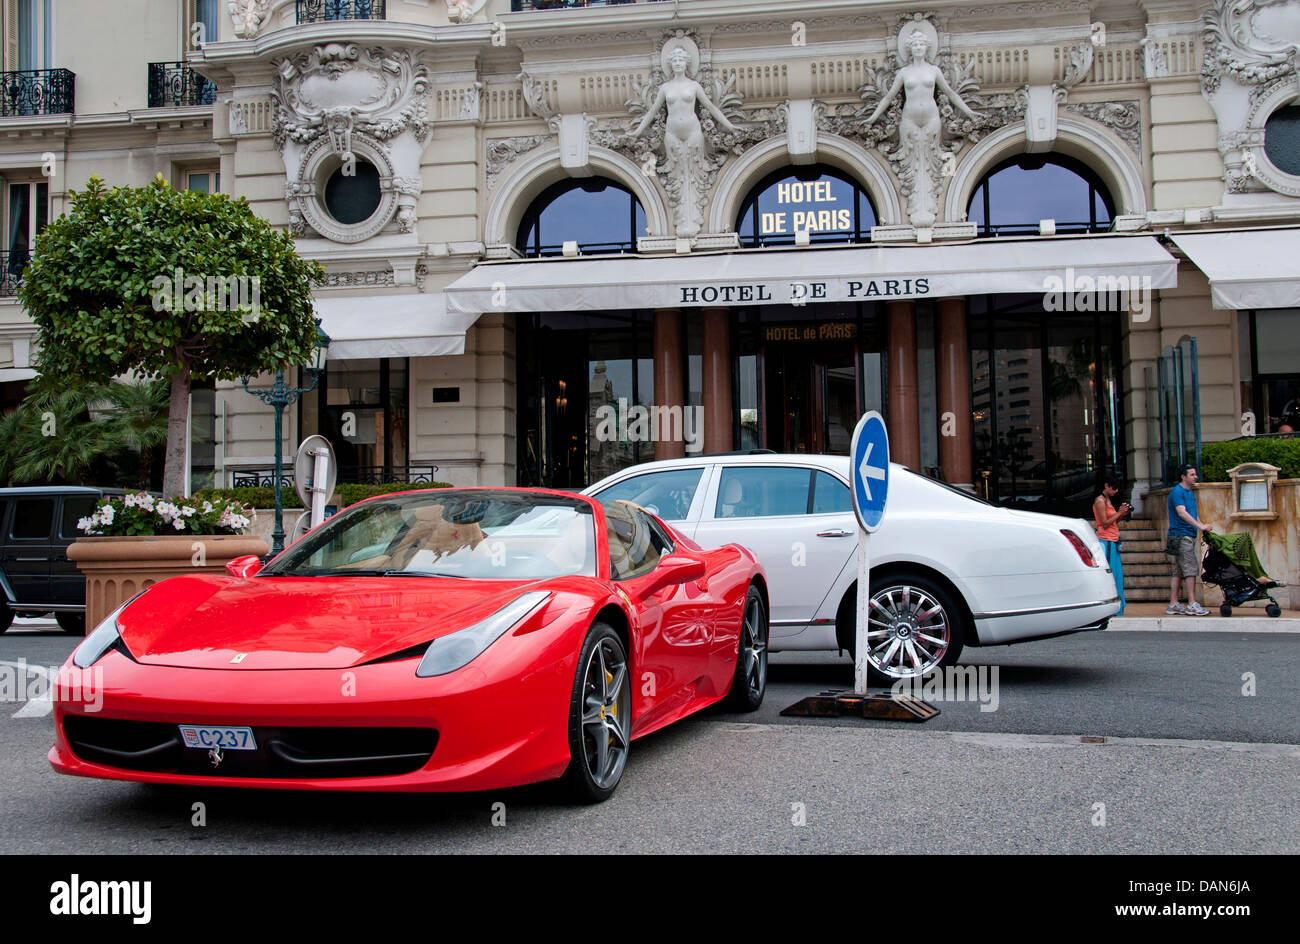 Hotel de Paris - Le Louis XV gegenüber vom Grand Casino Monte Carlo Fürstentum von Monaco Luxusautos Bentlee Mercedes Ferrari Stockfoto